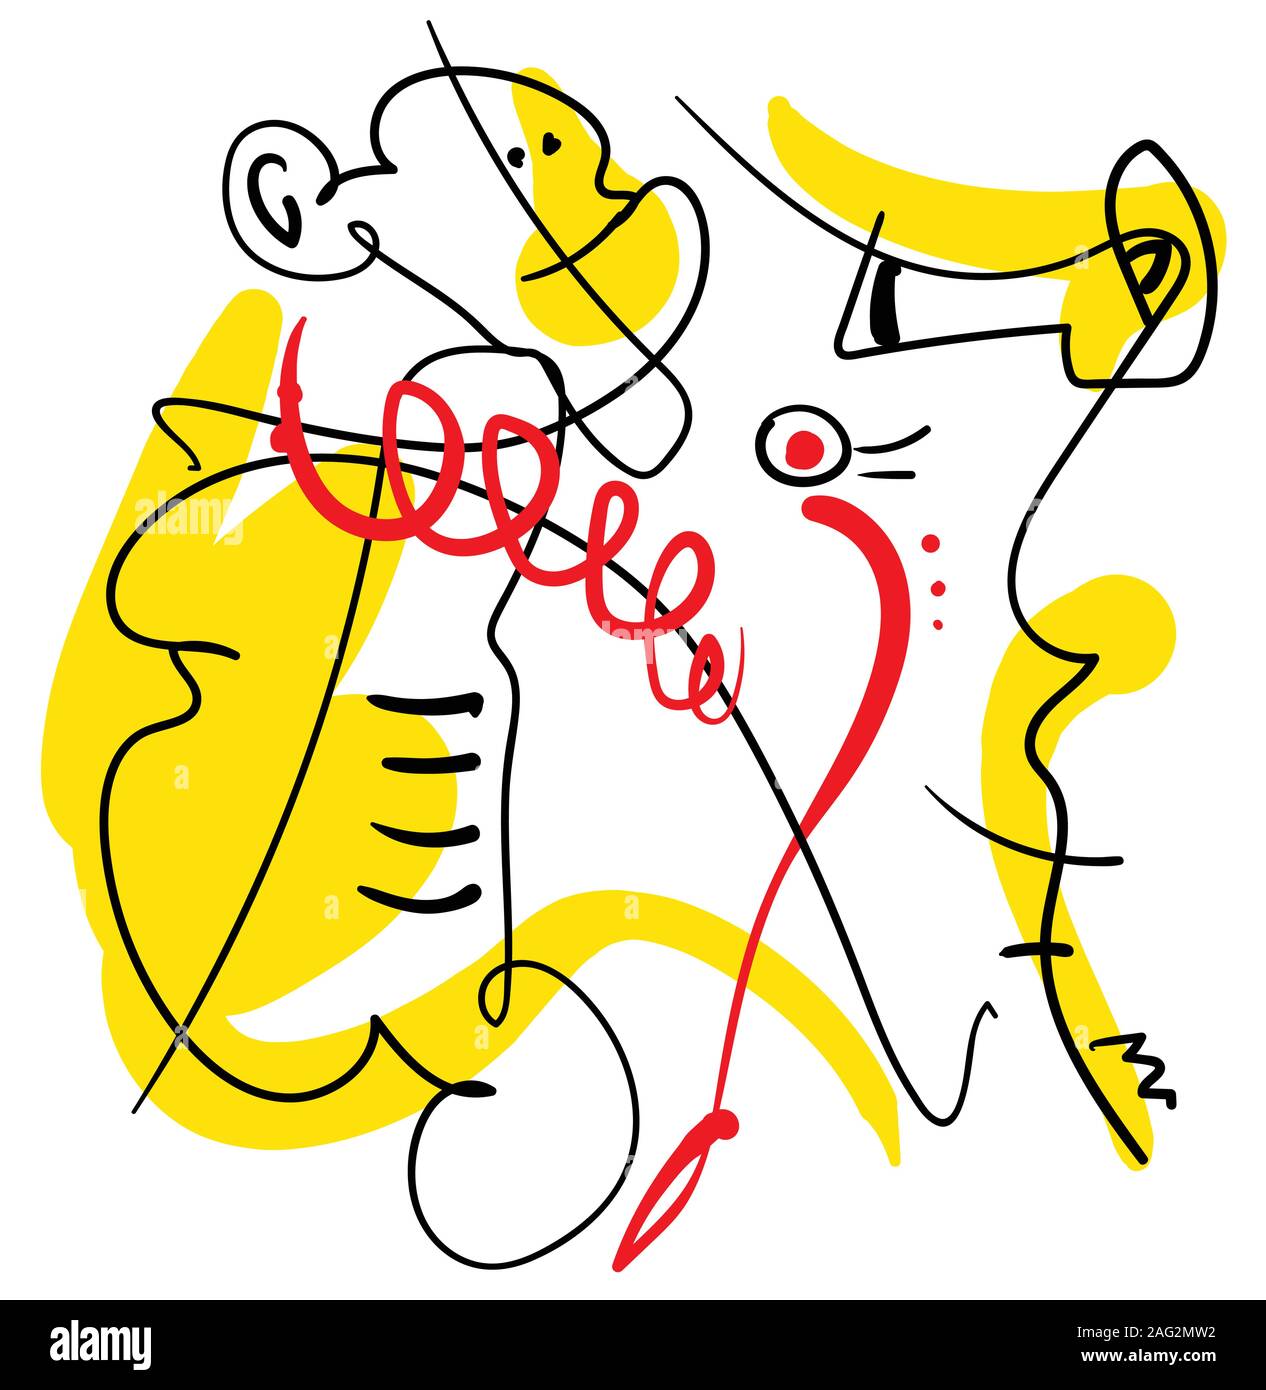 resumen una línea composición contemporánea, negro, amarillo y rojo, surrealista minimalista persona con mono y caballo de mar Ilustración del Vector